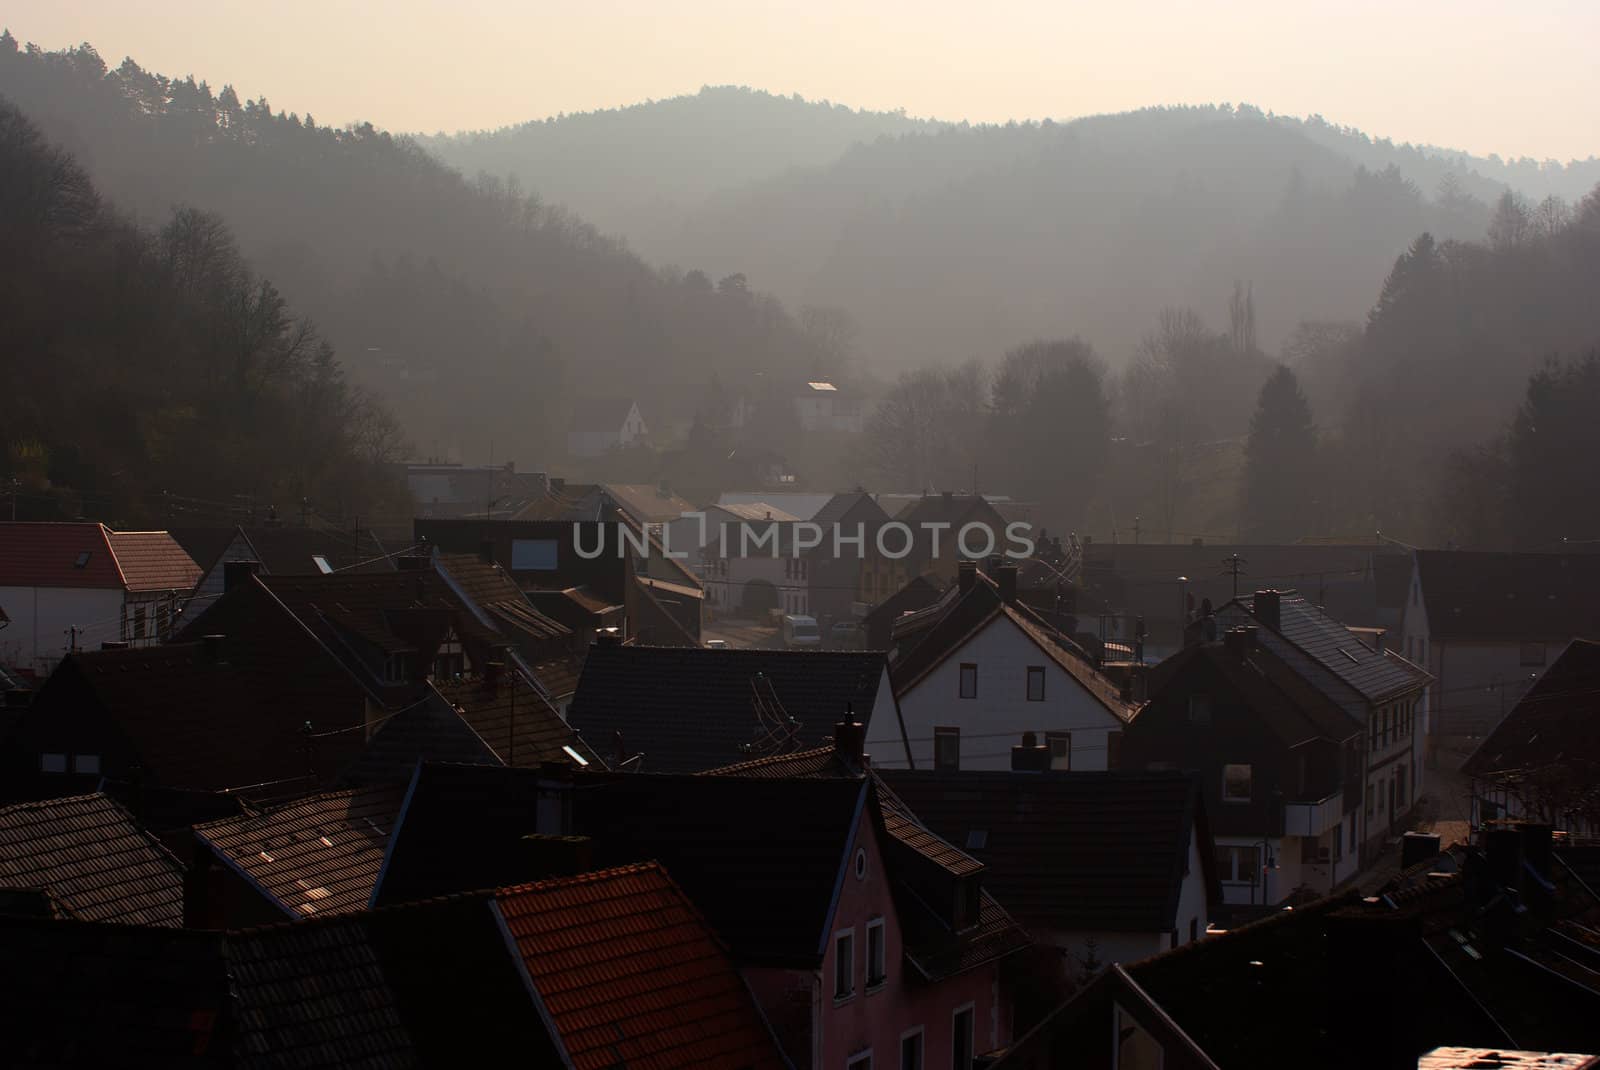 Morning in old German town by saasemen